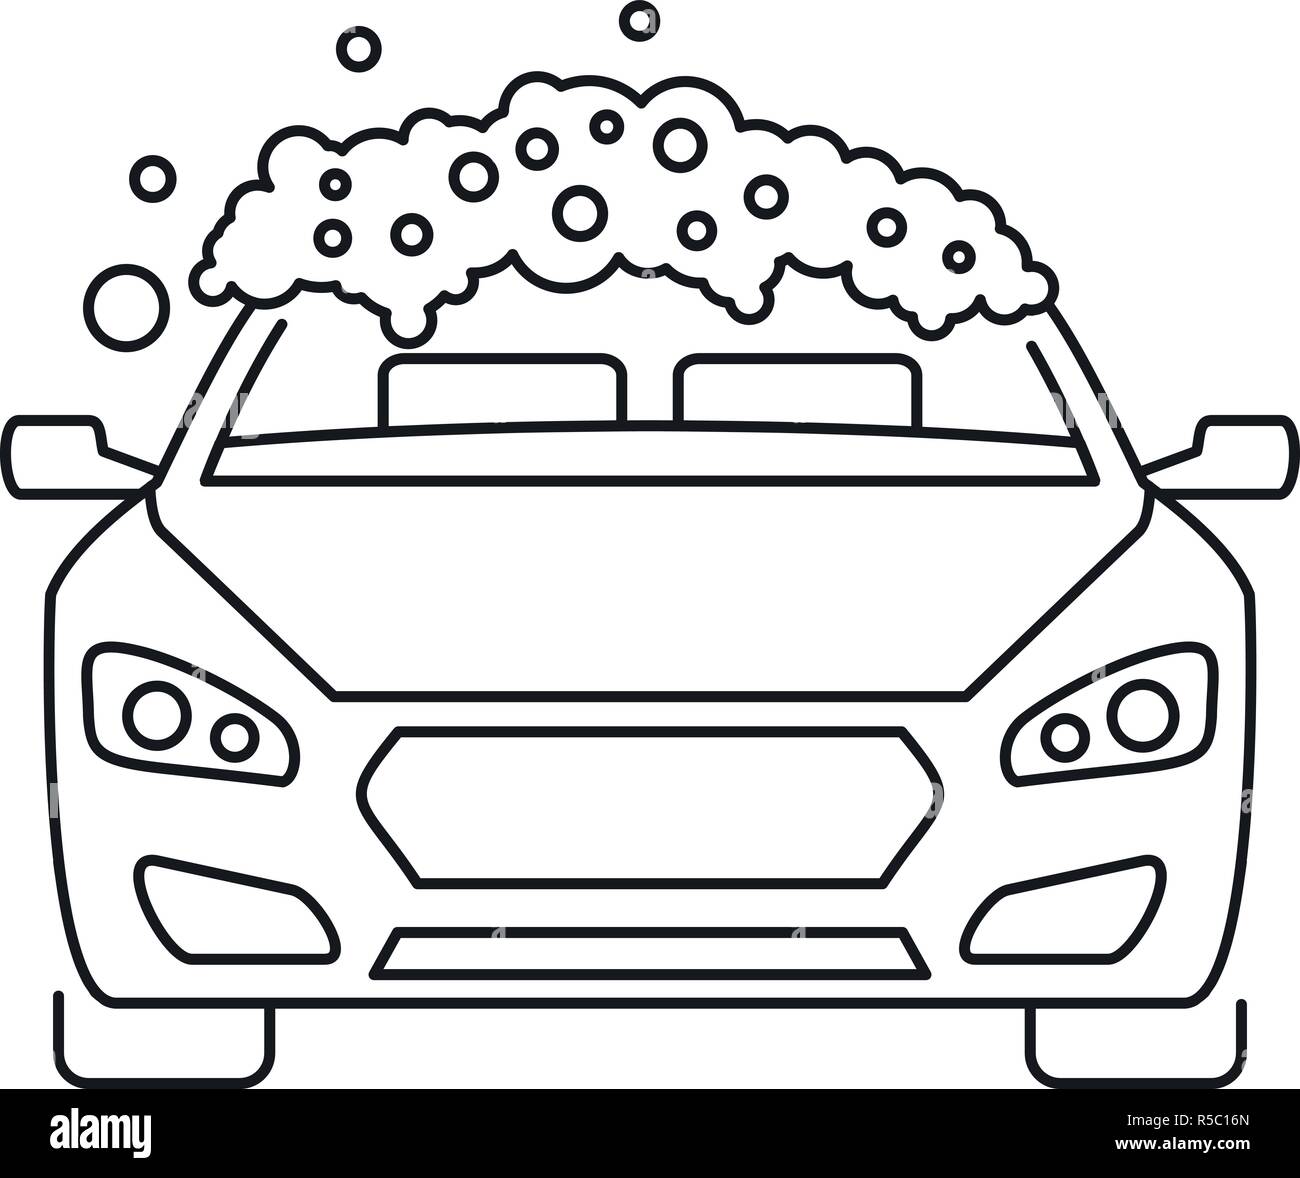 Ilustración de lavado de autos. el coche está en espuma de jabón.